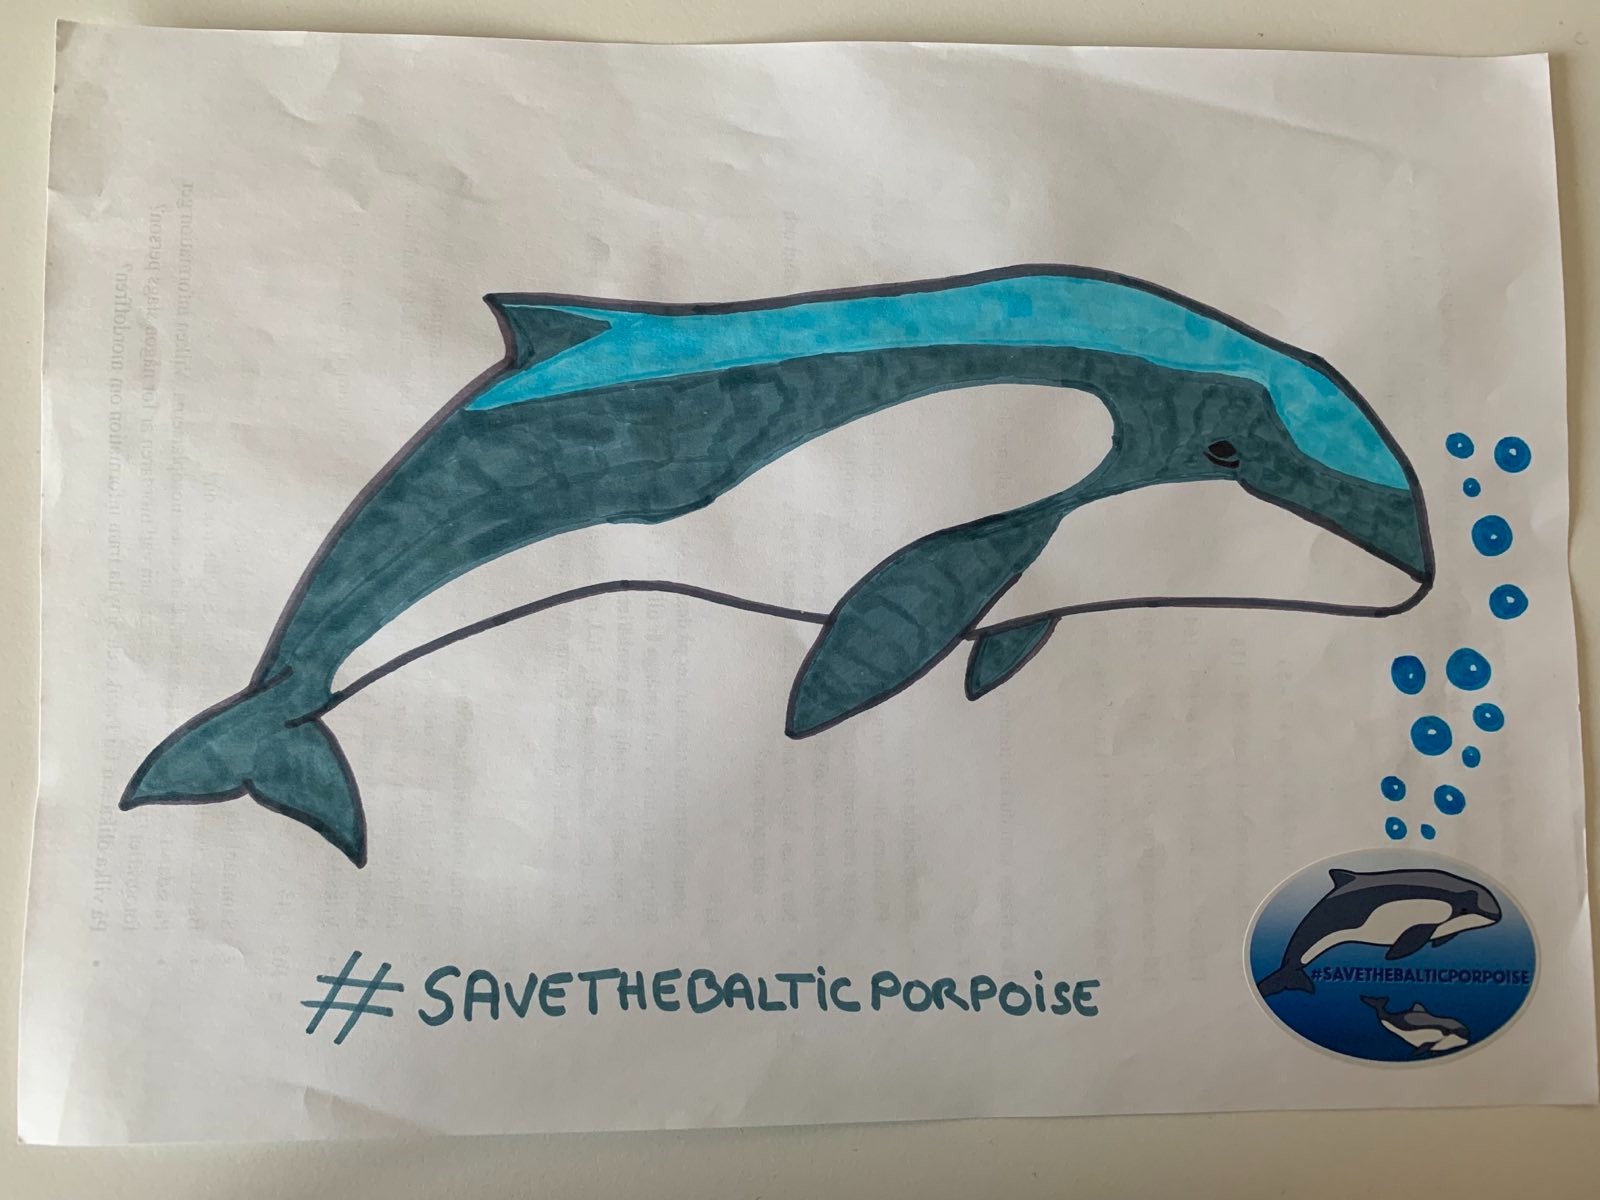 Disegno di una focena azzurra con l'hashtag #SaveTheBaltic